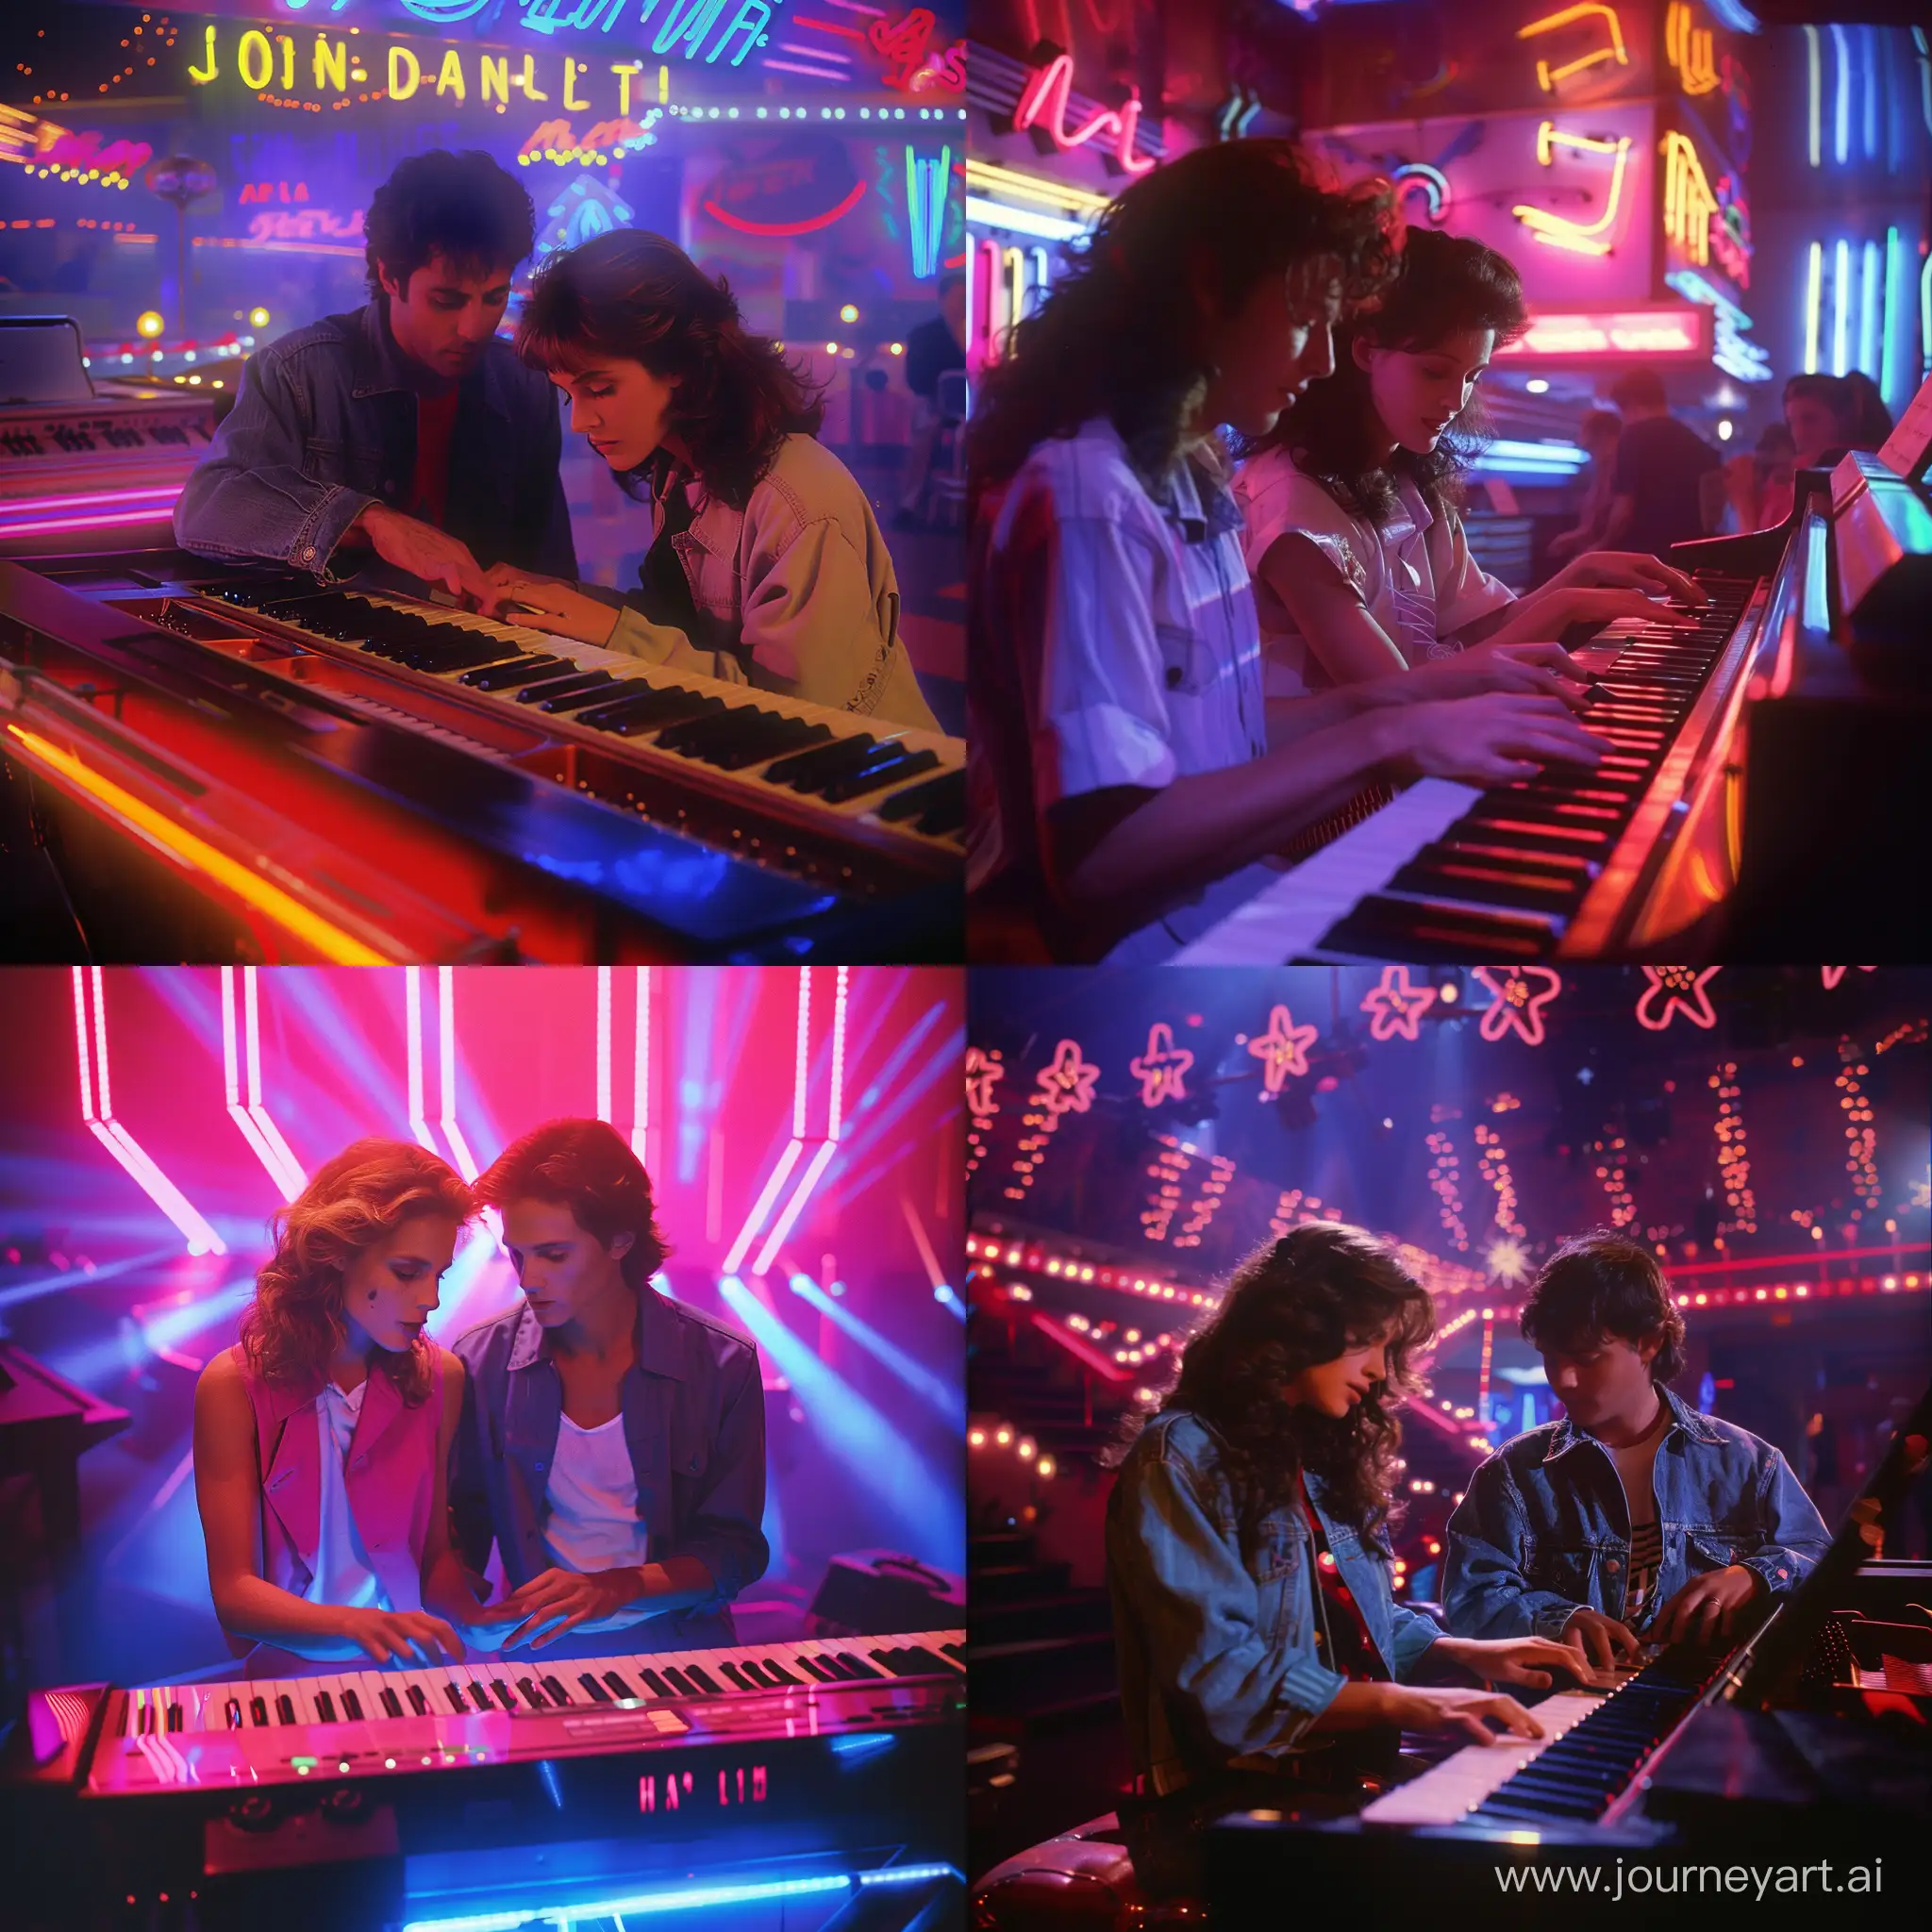 Haz una escena cinematográfica de una película de John Carpenter de la década de 1980s donde se observa a una pareja de jóvenes tocando el piano, rodeado de luces de neón